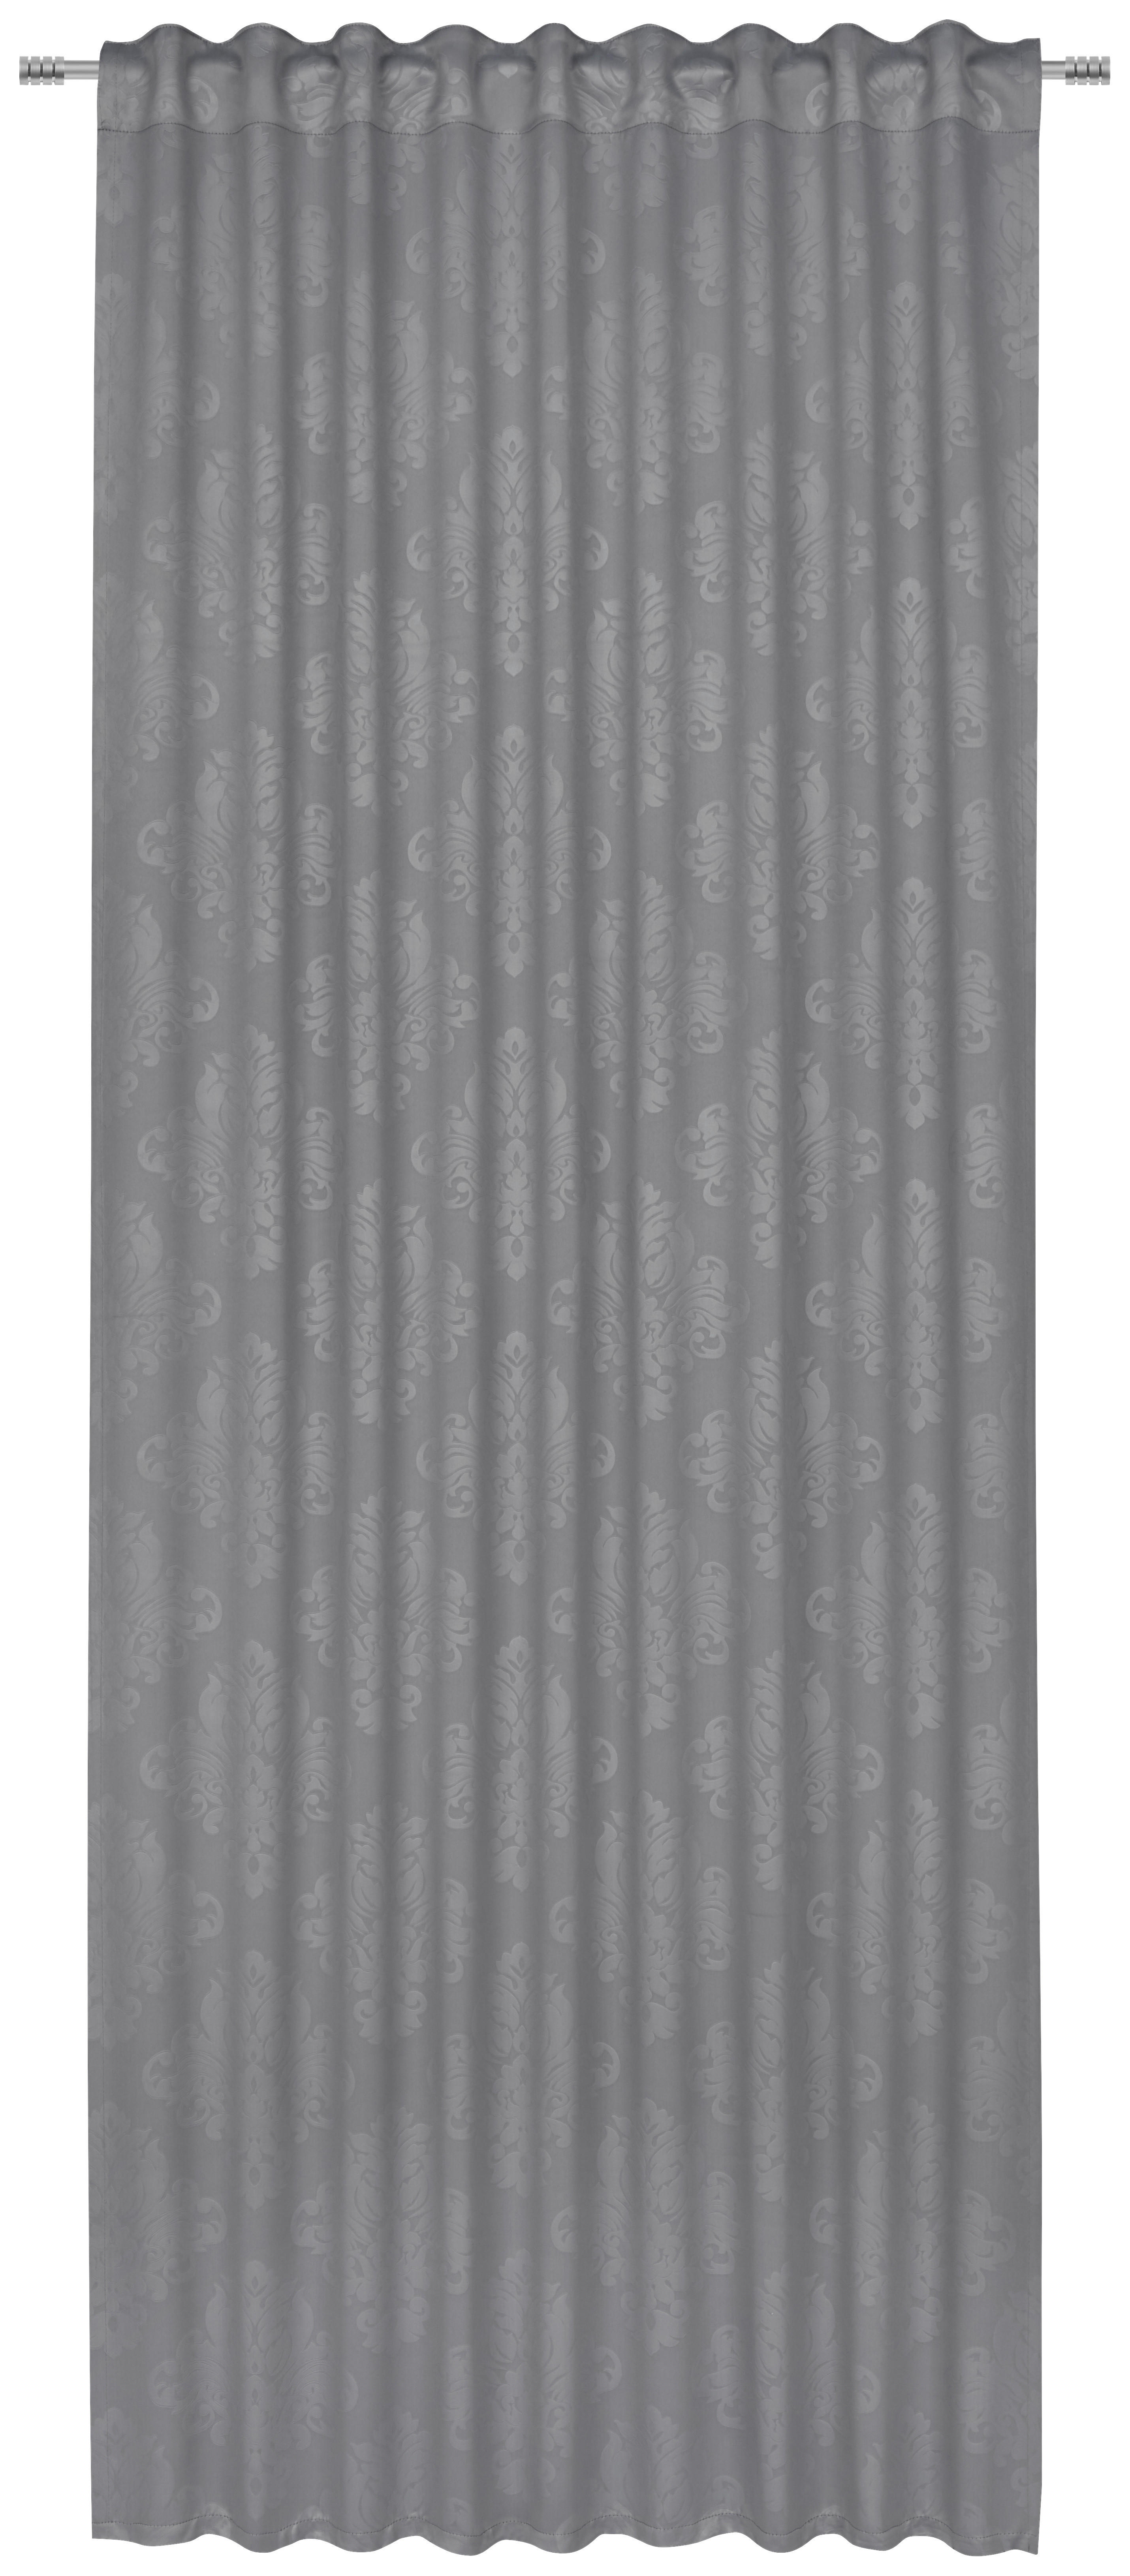 FERTIGVORHANG black-out (lichtundurchlässig)  - Grau, Konventionell, Textil (135/245cm) - Boxxx